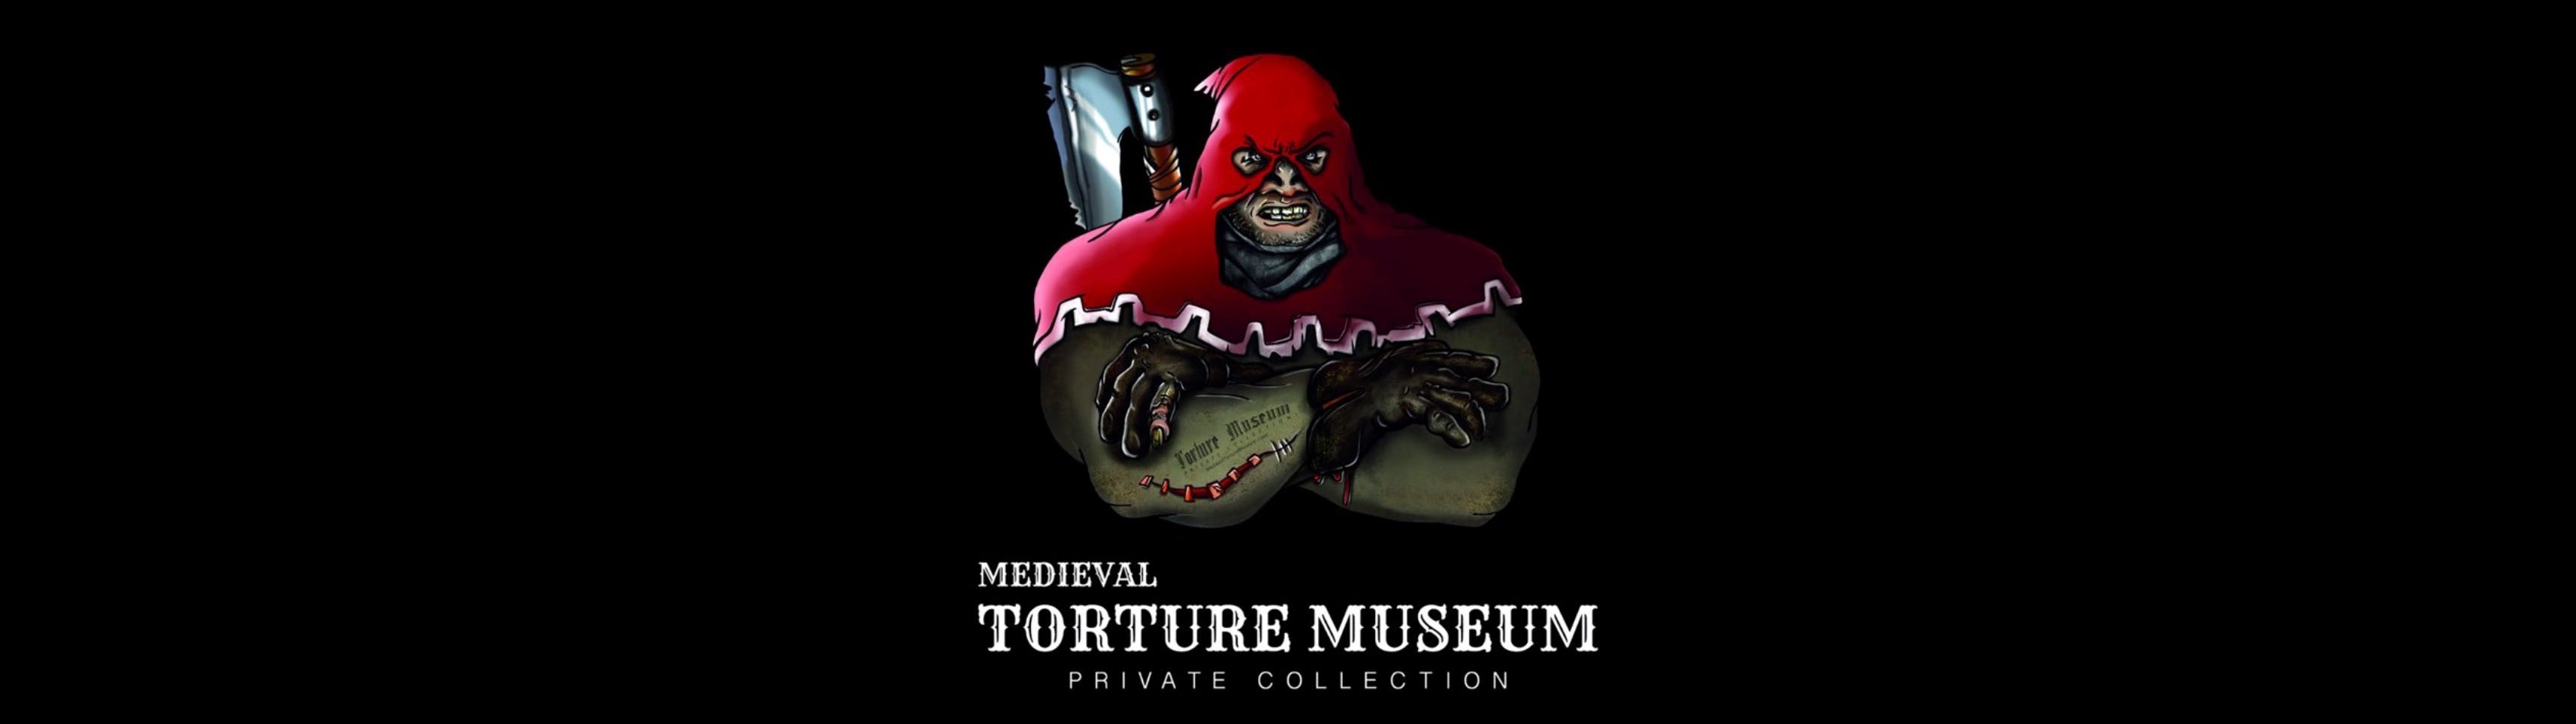 Museo de la Tortura Medieval con audioguía, experiencia de caza de fantasmas y entrada a la Tiny Art Gallery